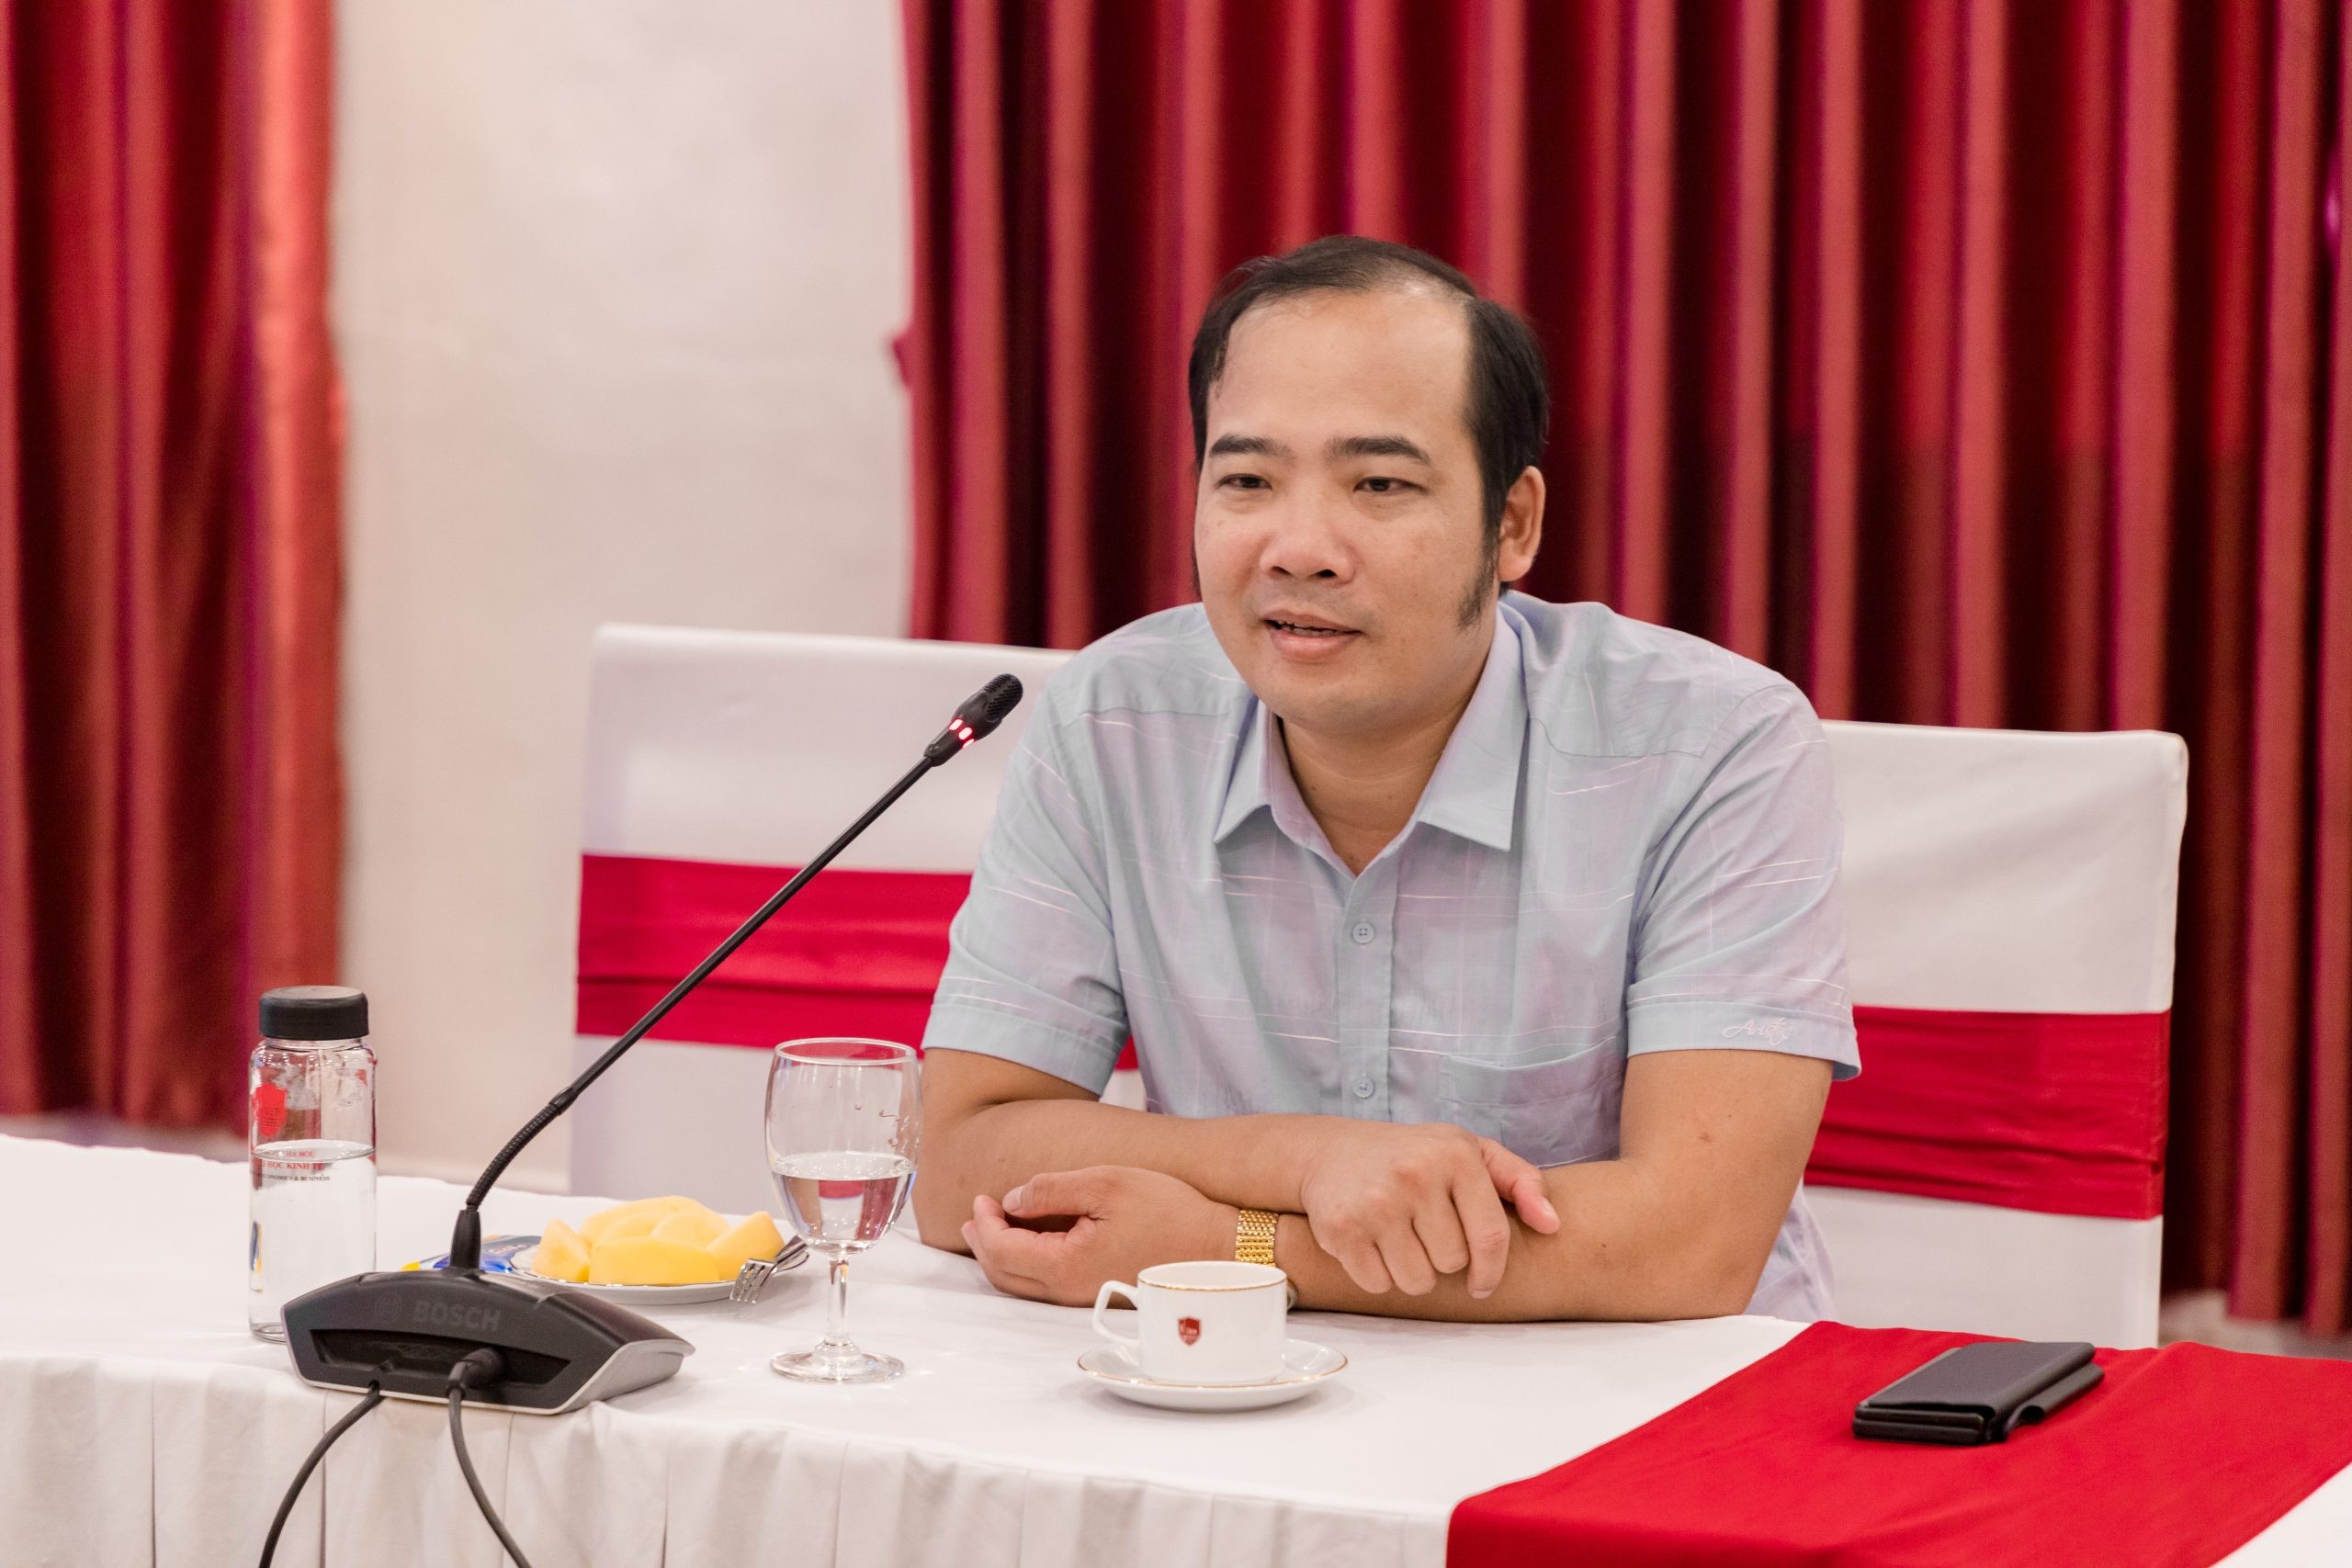 
Ông Nguyễn Anh Quê, Ủy viên Ban Chấp hành Hiệp hội Bất động sản Việt Nam
